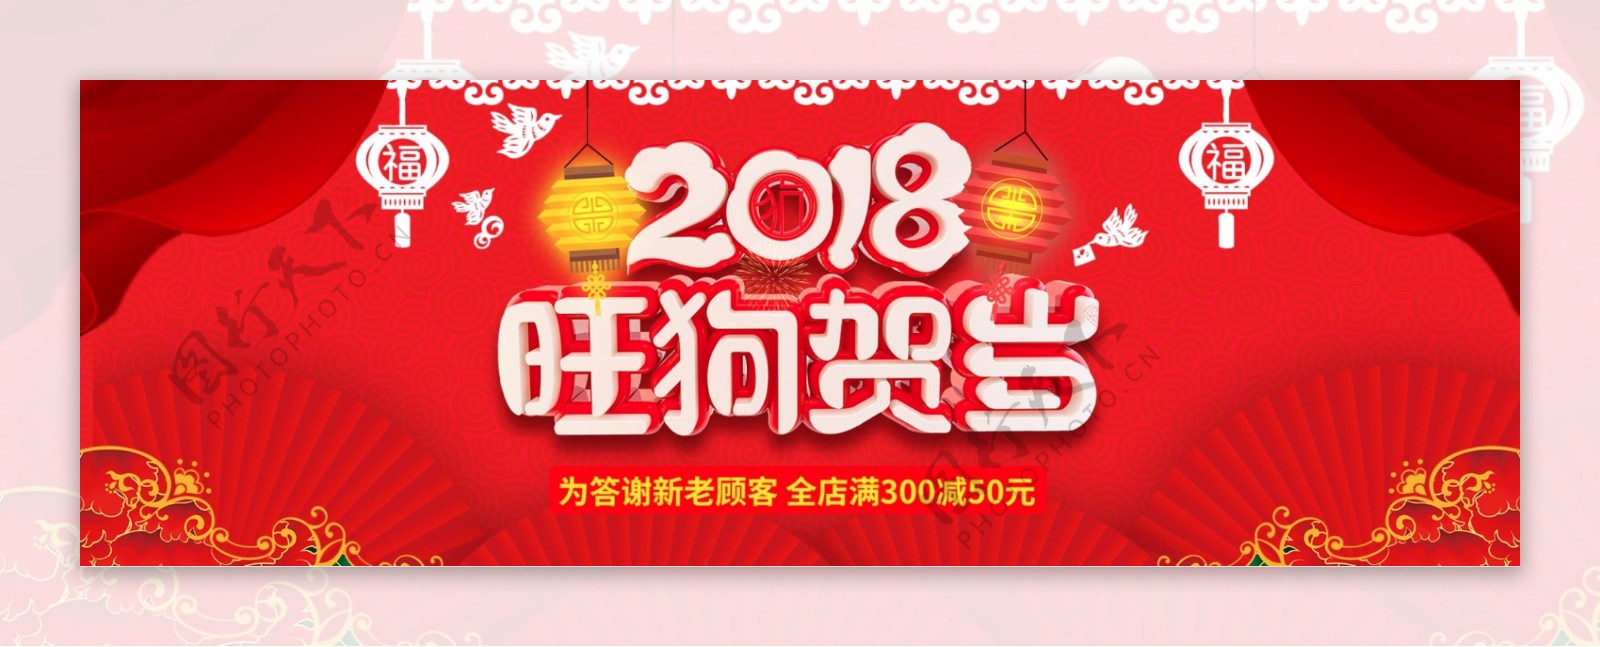 红色淘宝电商新春活动节日海报banner